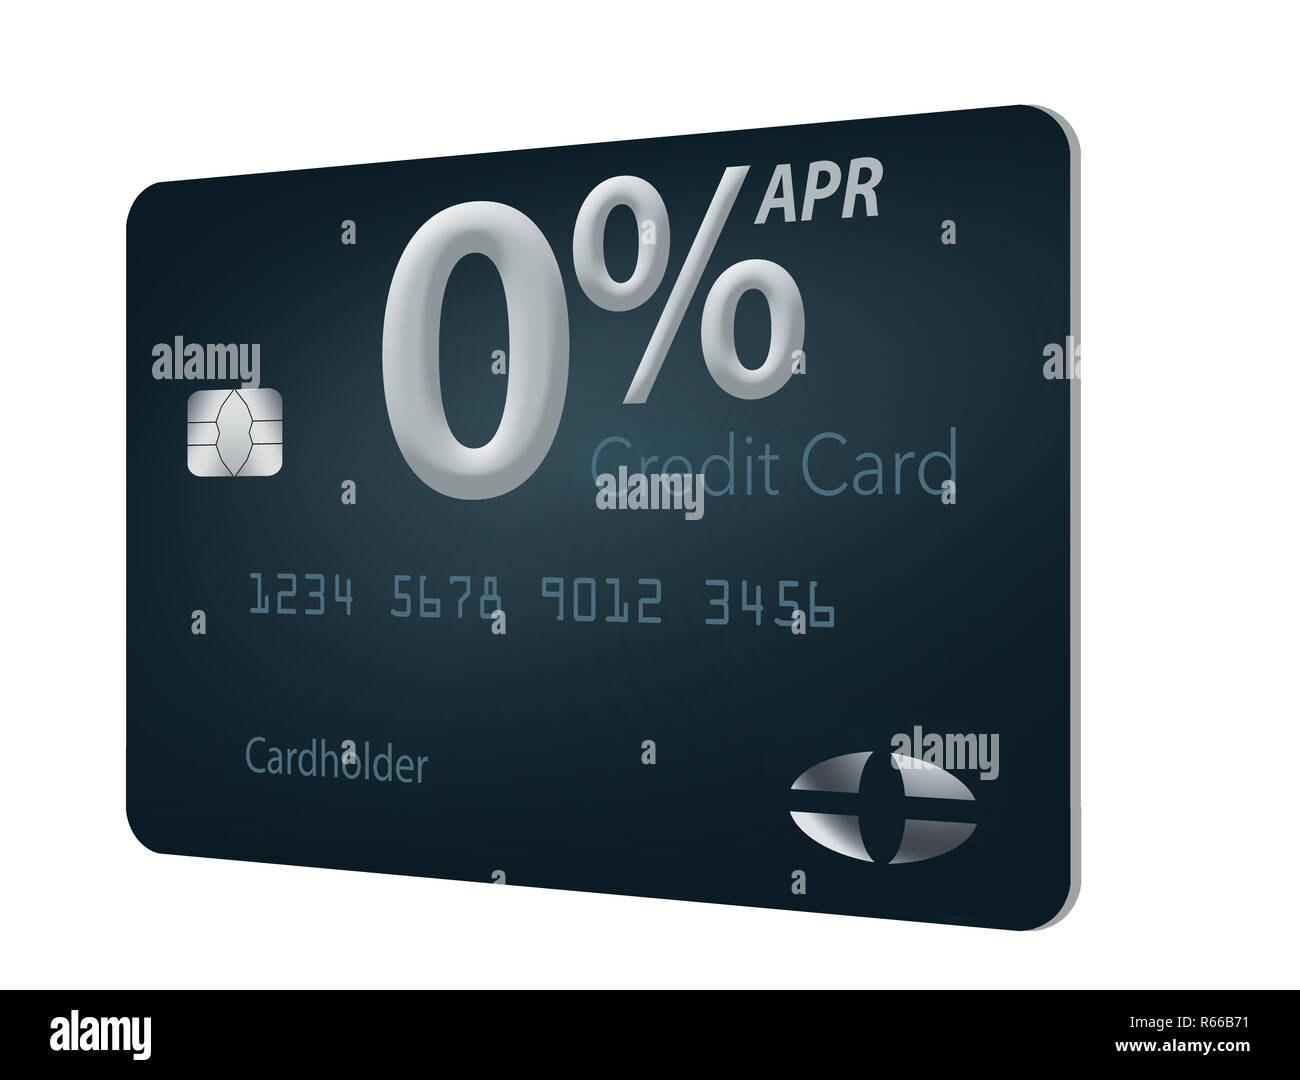 Viele Kreditkarte bietet jetzt auch null Prozent Jahreszins für 12-15 Monate und dieser generischen mock Karte veranschaulicht diese Angebote. Dies ist Stockfoto